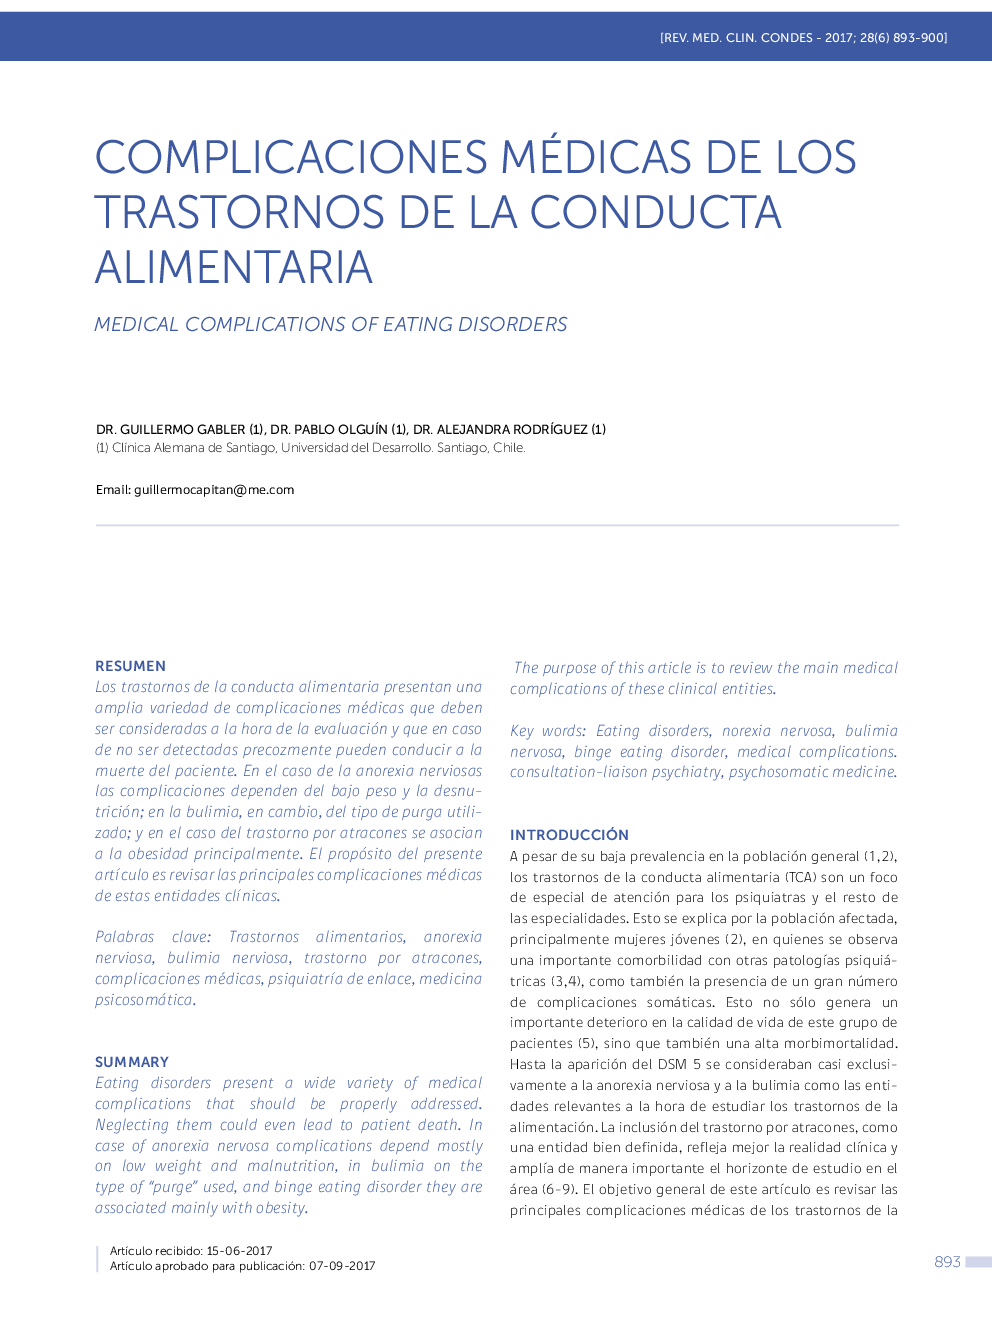 COMPLICACIONES MÃDICAS DE LOS TRASTORNOS DE LA CONDUCTA ALIMENTARIA